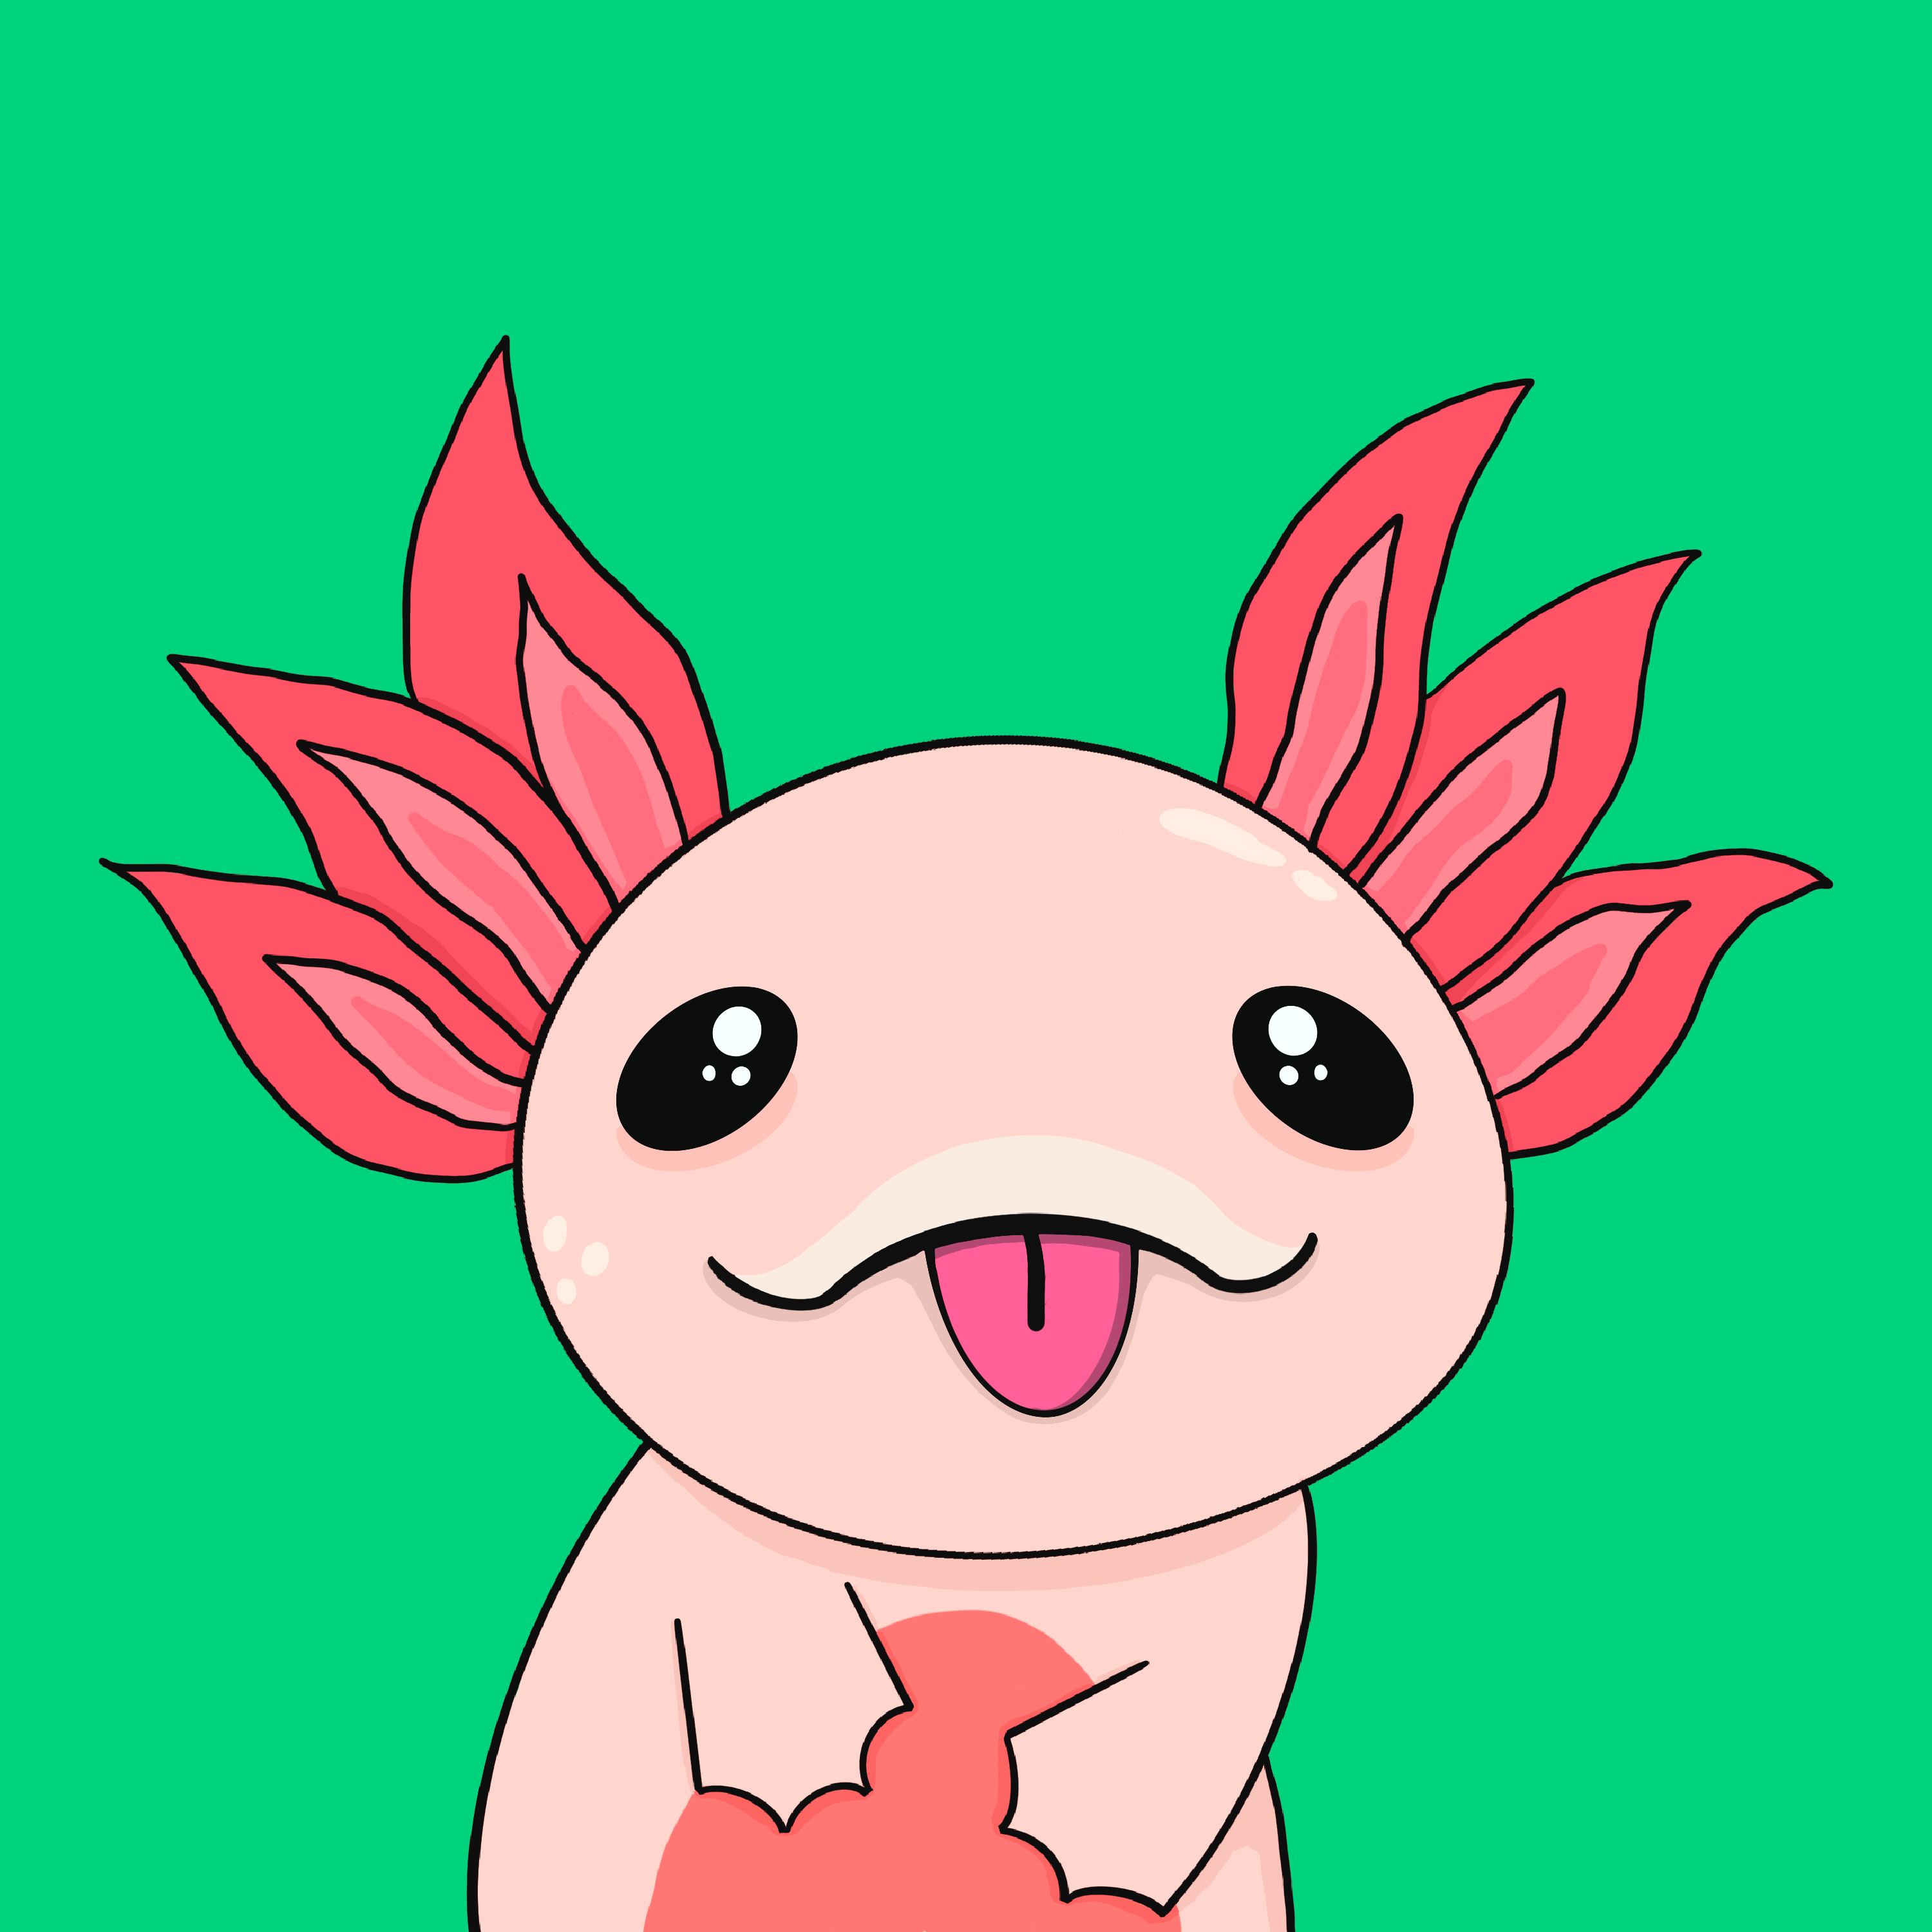 Silly Anime Eyes Axolotl - Epic Axolotl | OpenSea